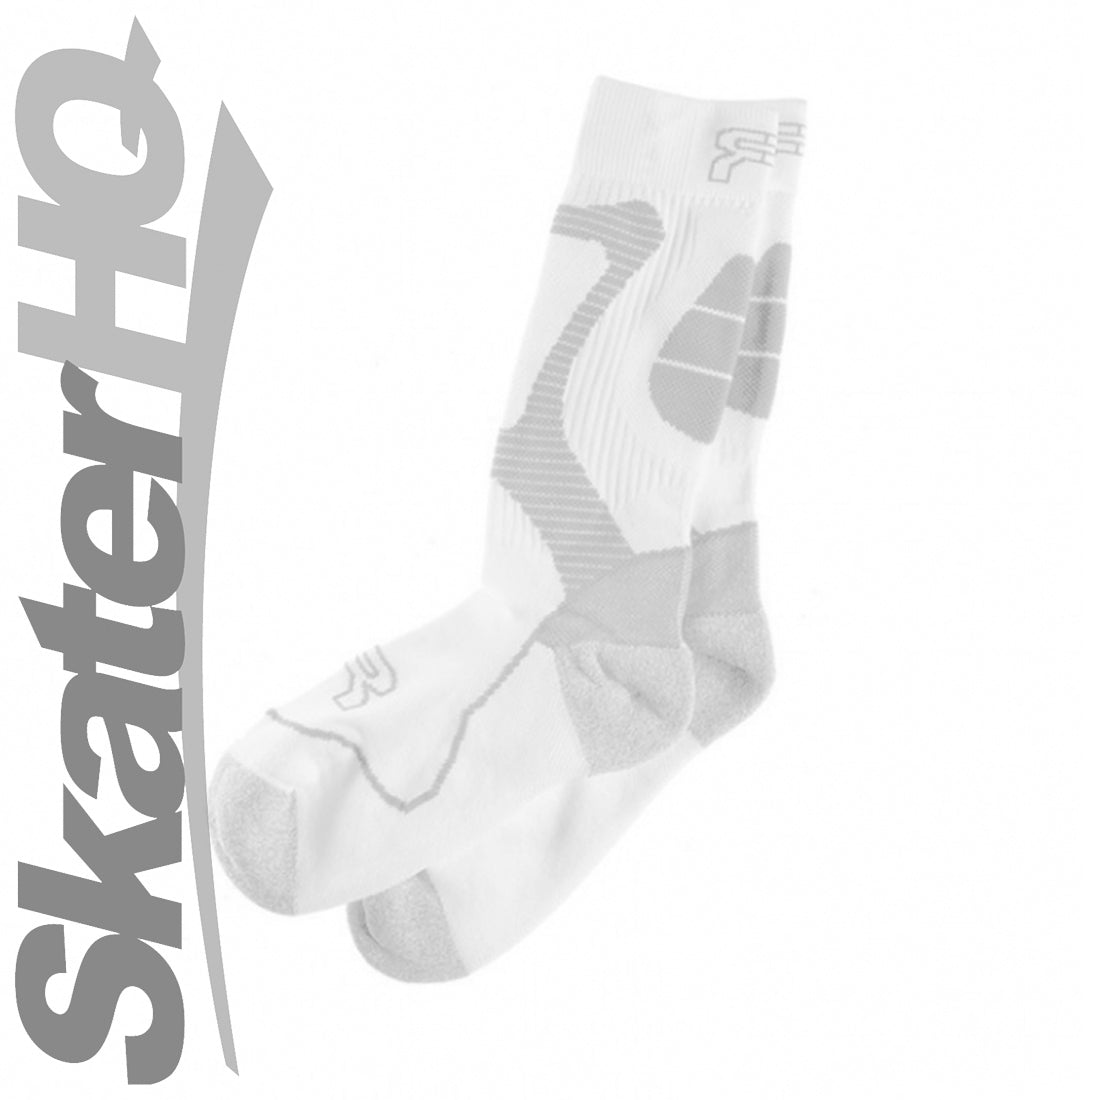 FR Nano Sport Socks White - XL - EU45-47 Apparel Socks